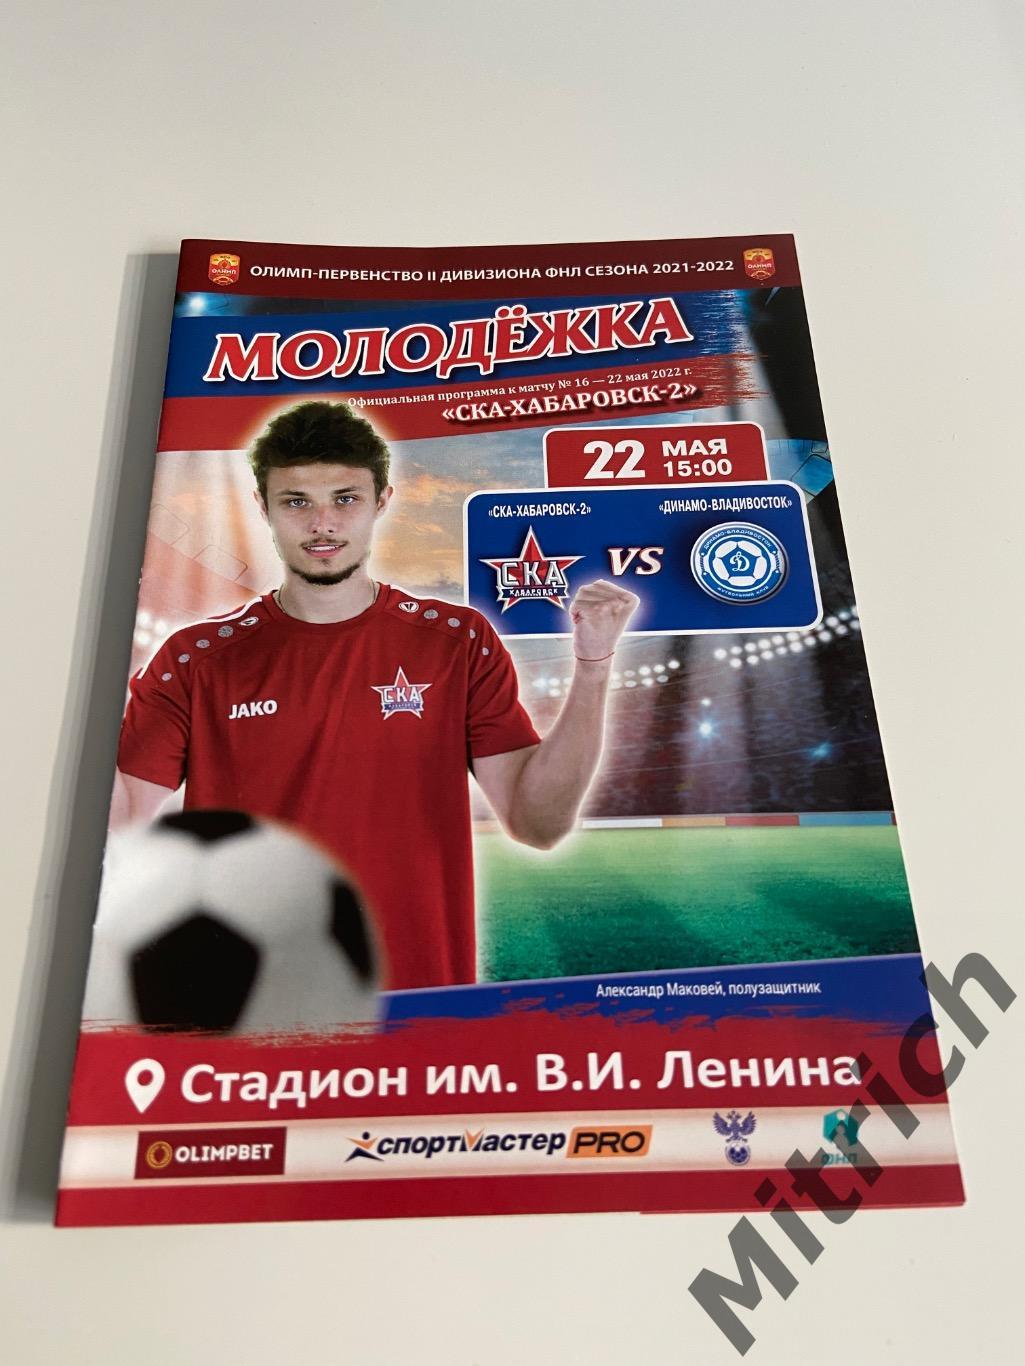 СКА-2 Хабаровск - Динамо Владивосток 2021 / 2022